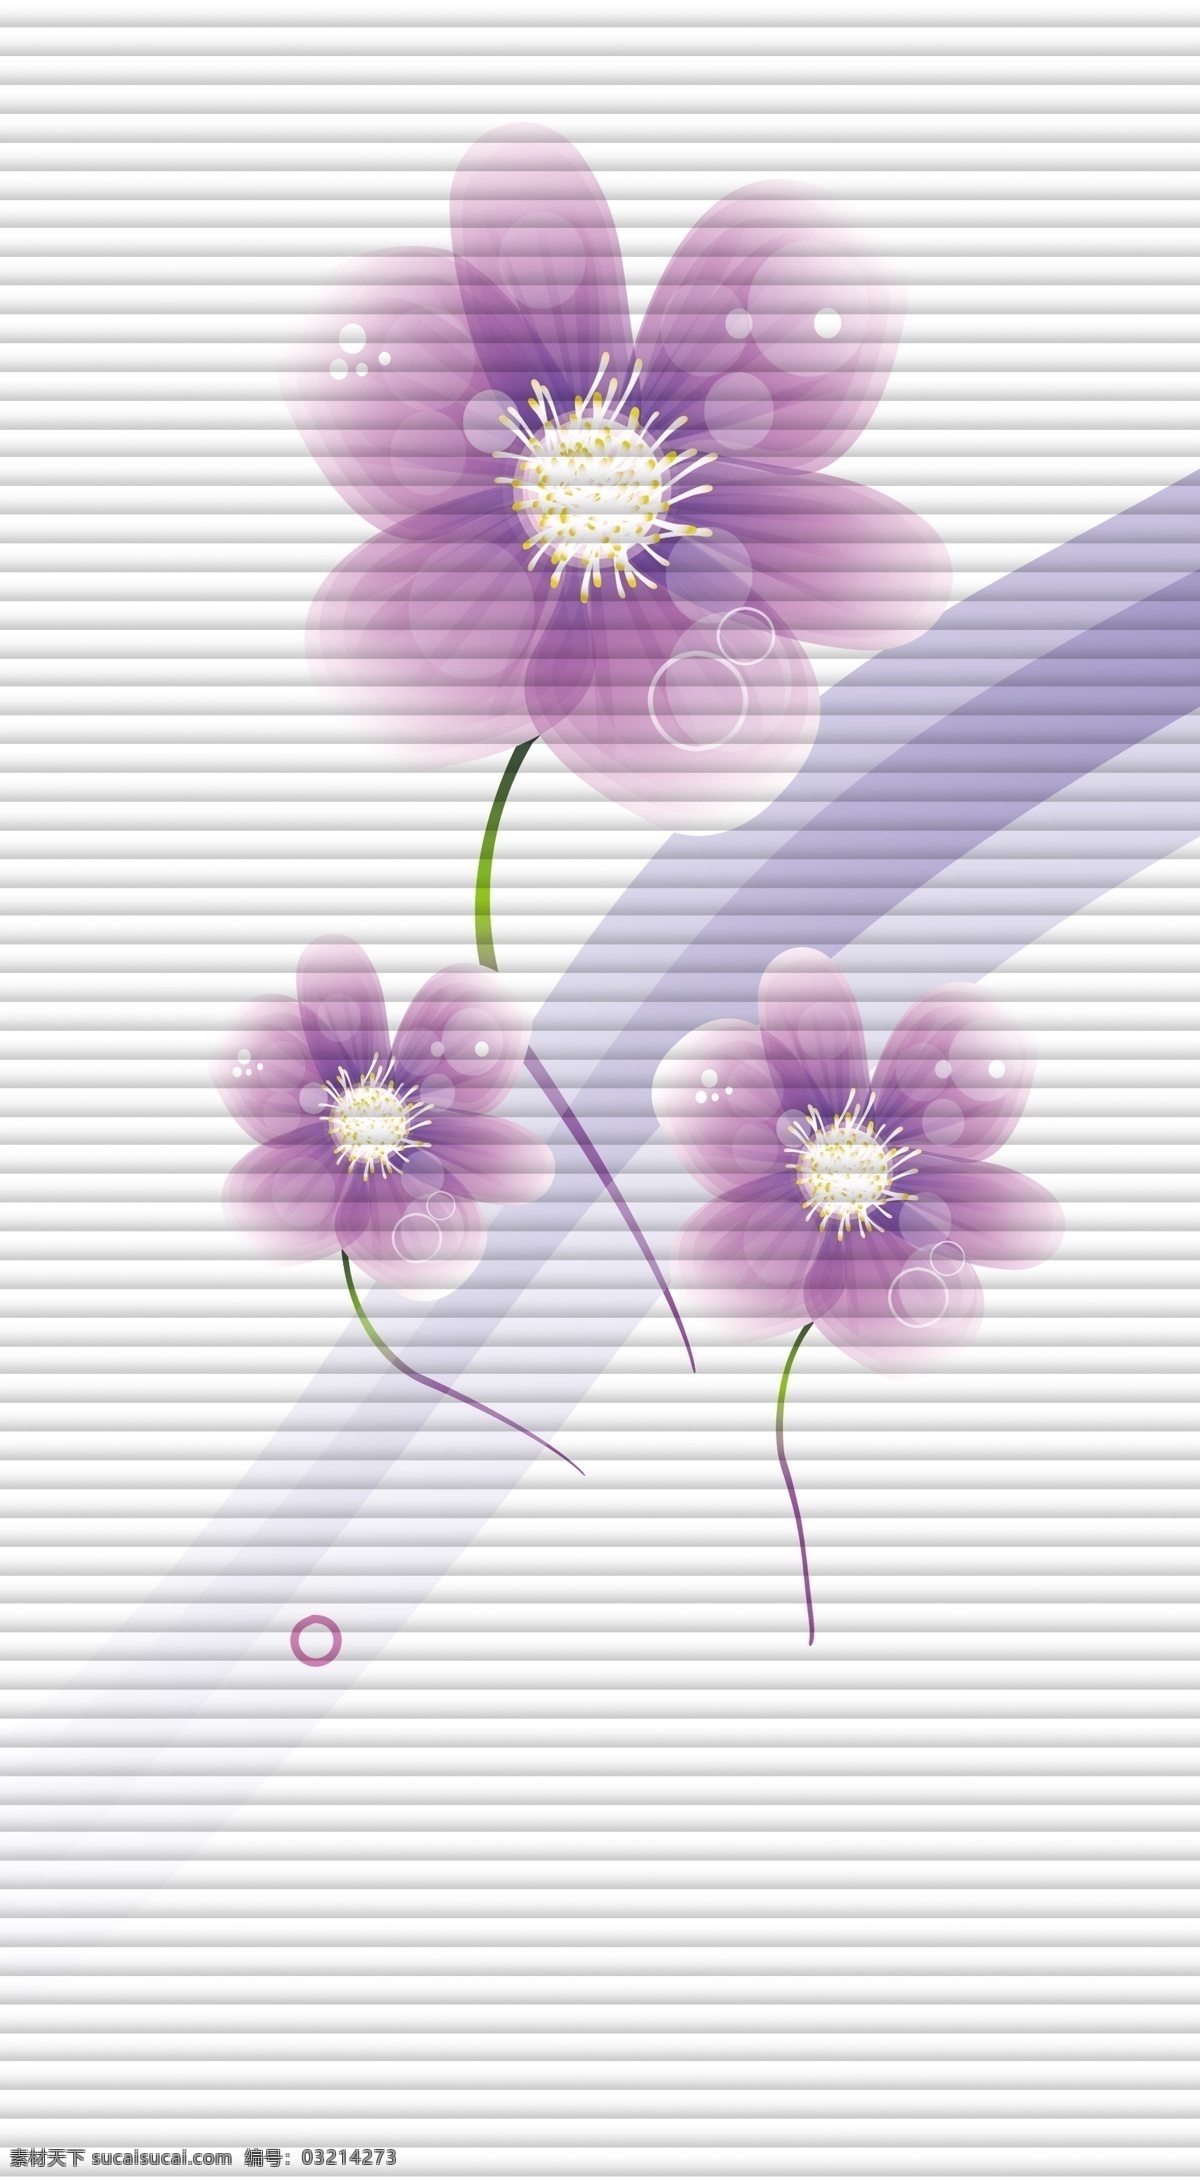 移门 花朵 广告设计模板 梦幻线条 线条 移门花朵 移门图案 圆圈 源文件 紫色梦幻 紫色花朵 紫色 百叶 家居装饰素材